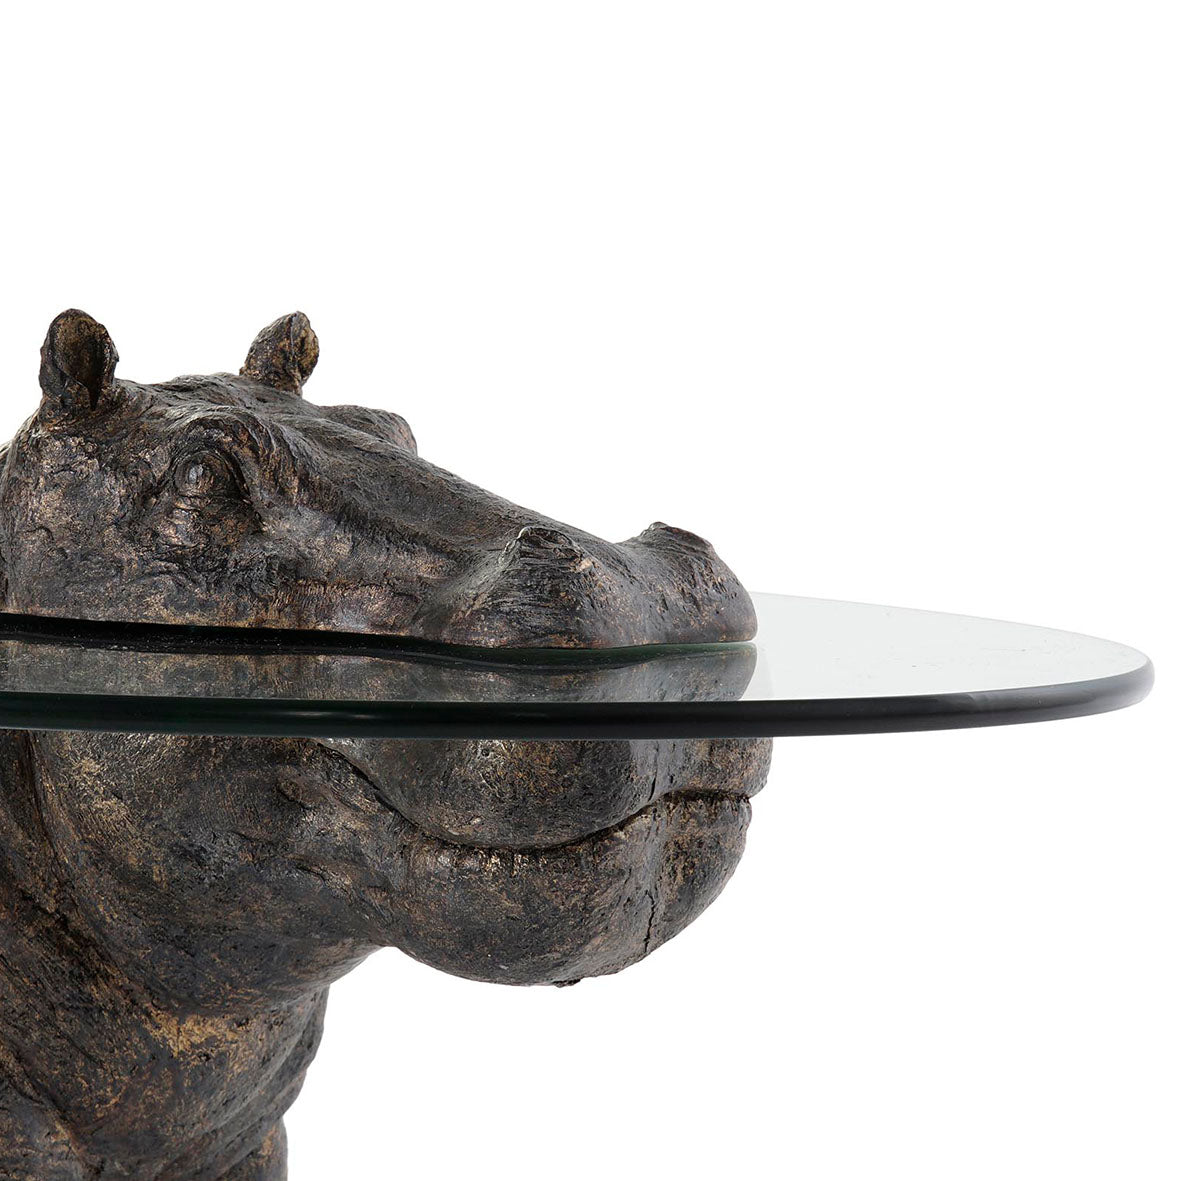 Estanterías modernas para salón - Hipopótamo Muebles